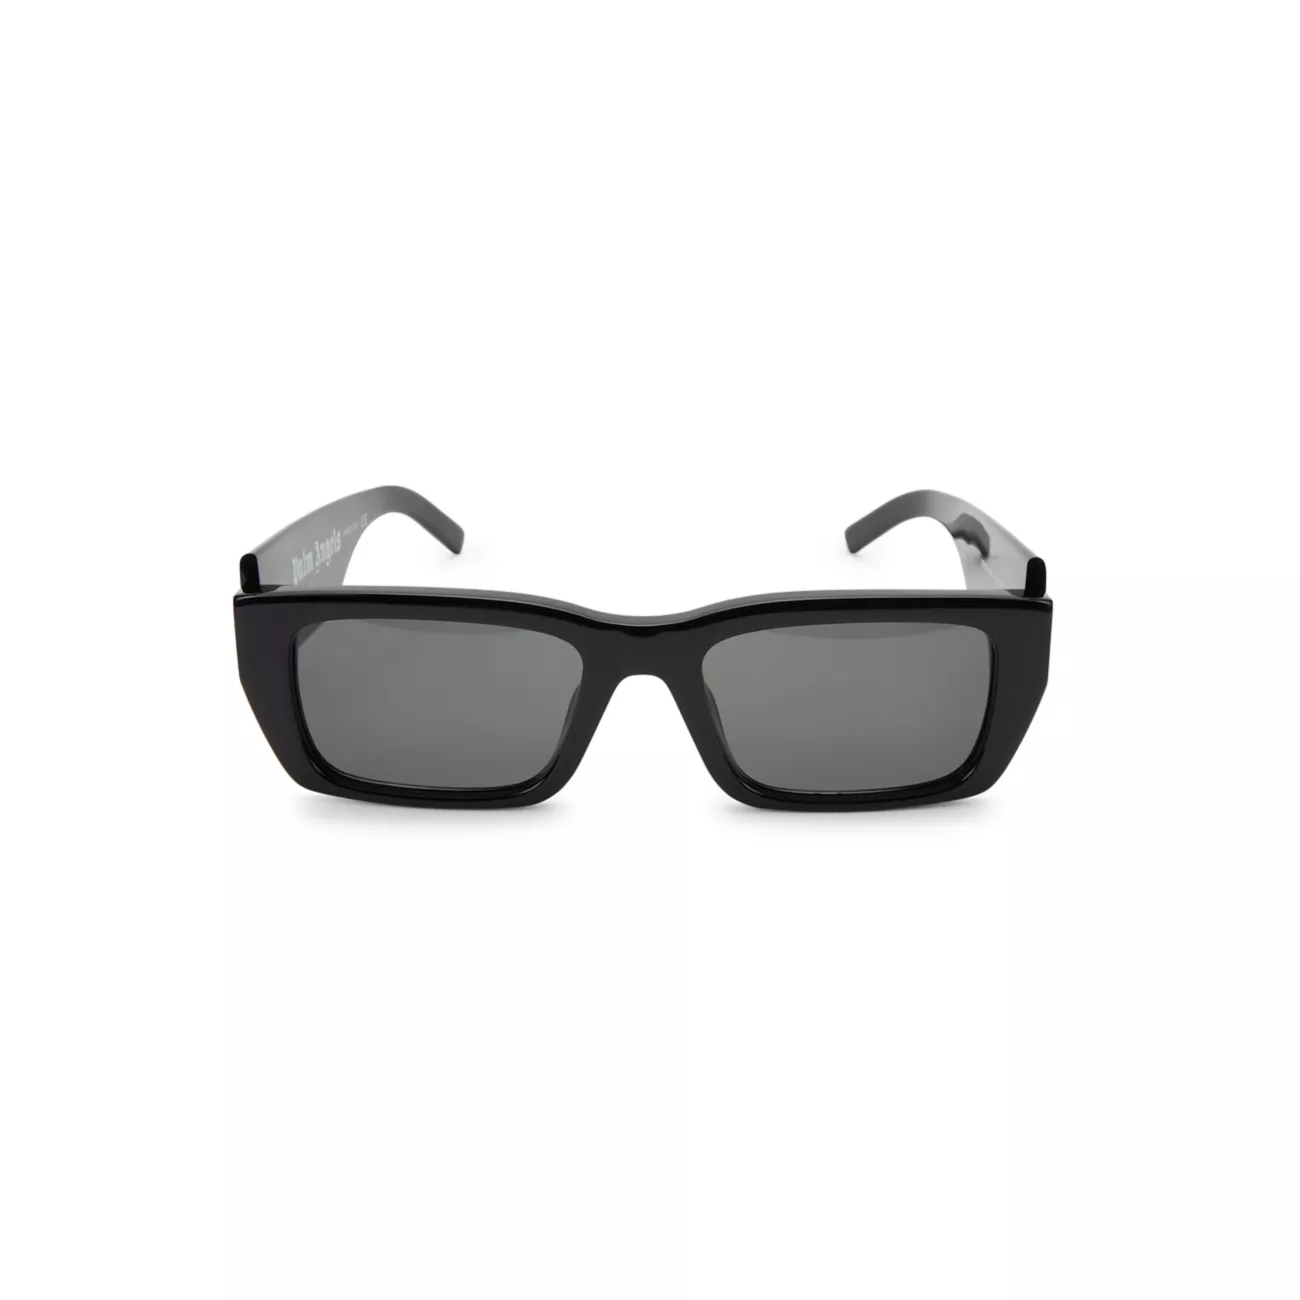 Солнцезащитные очки 18MM с прямоугольным логотипом PALM ANGELS